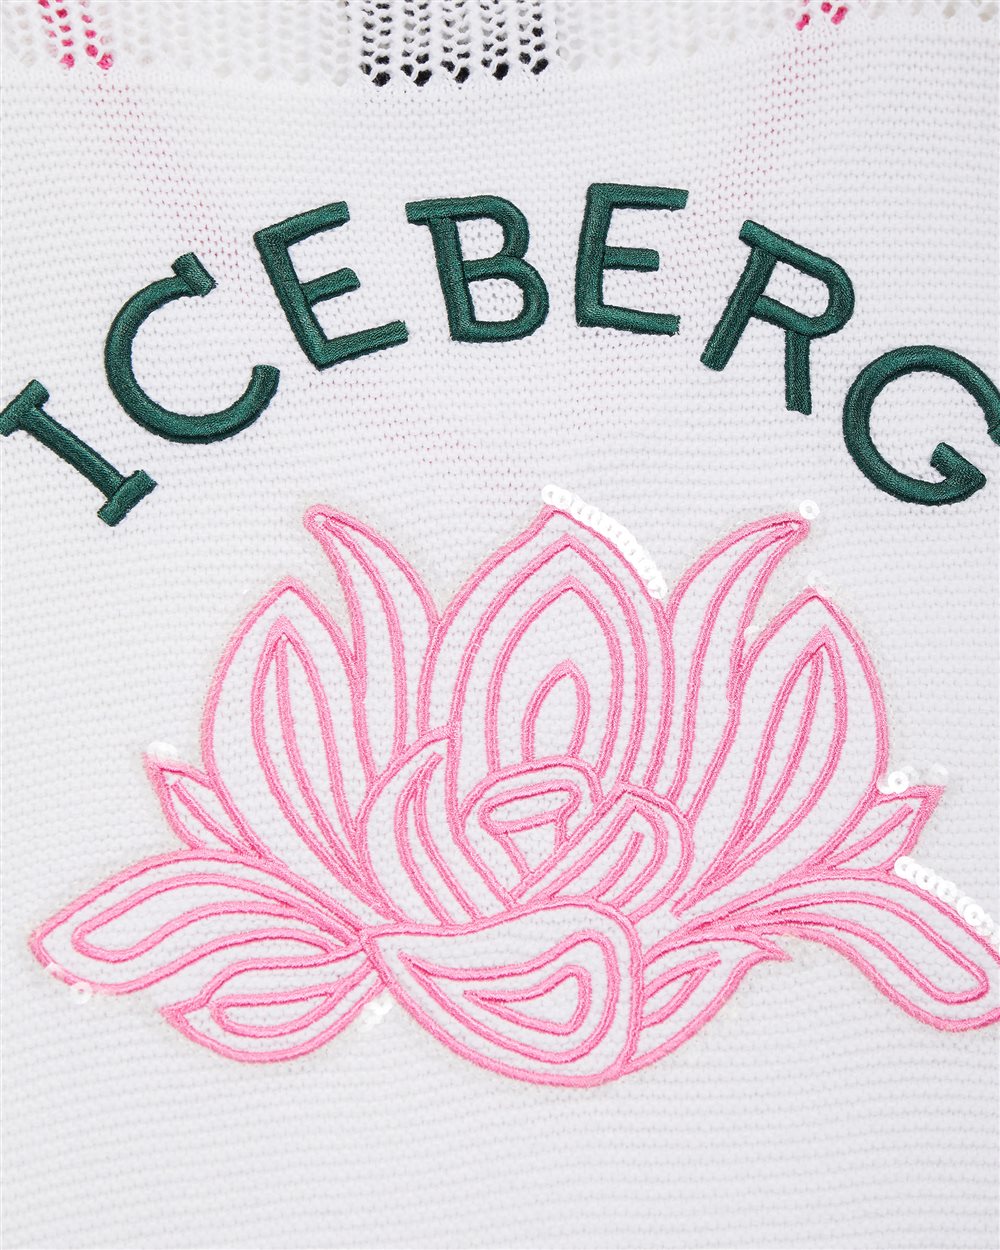 Pullover con logo - Iceberg - Official Website